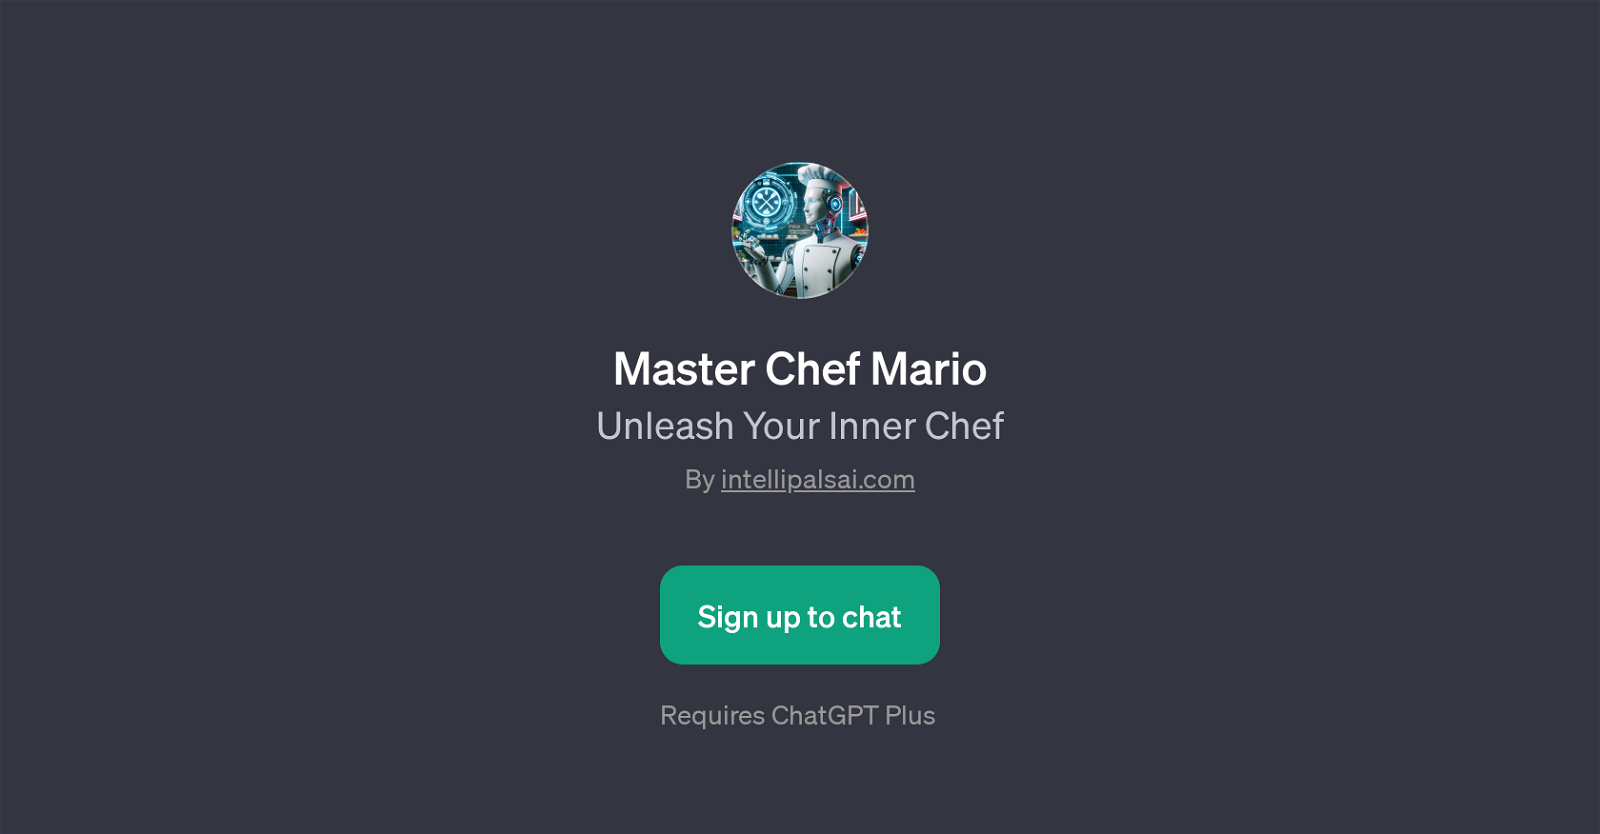 Master Chef Mario website